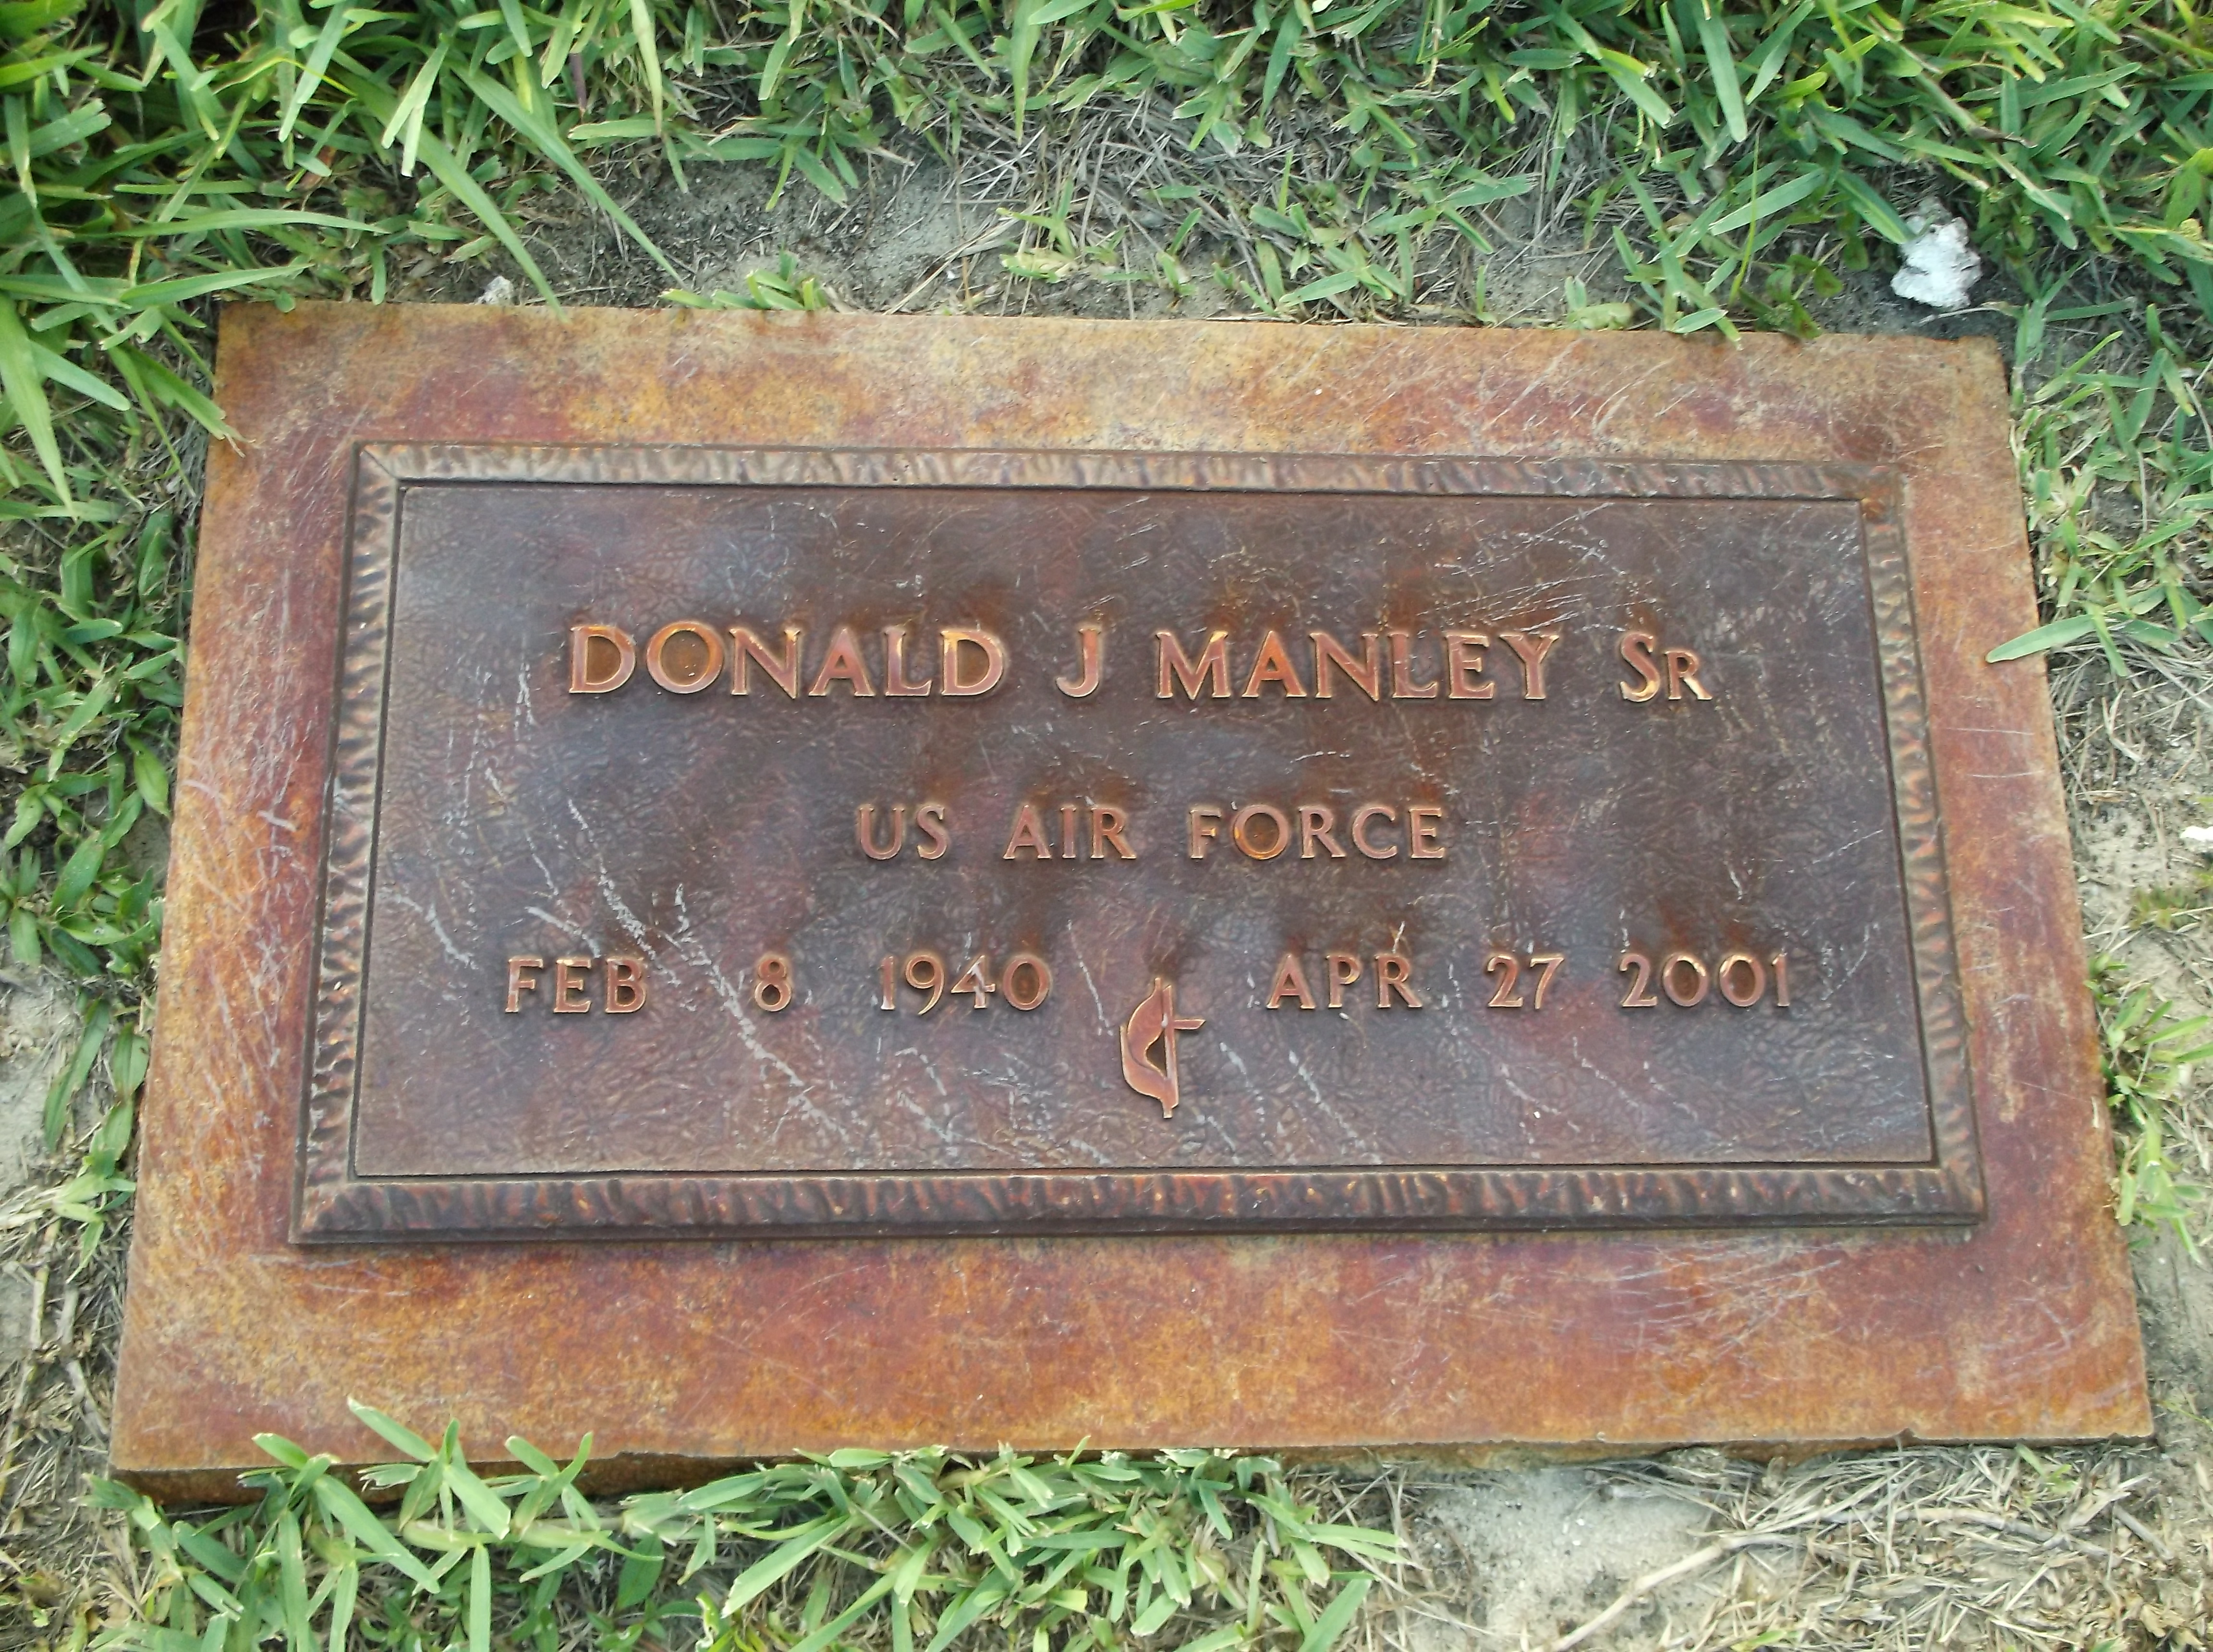 Donald J Manley, Sr